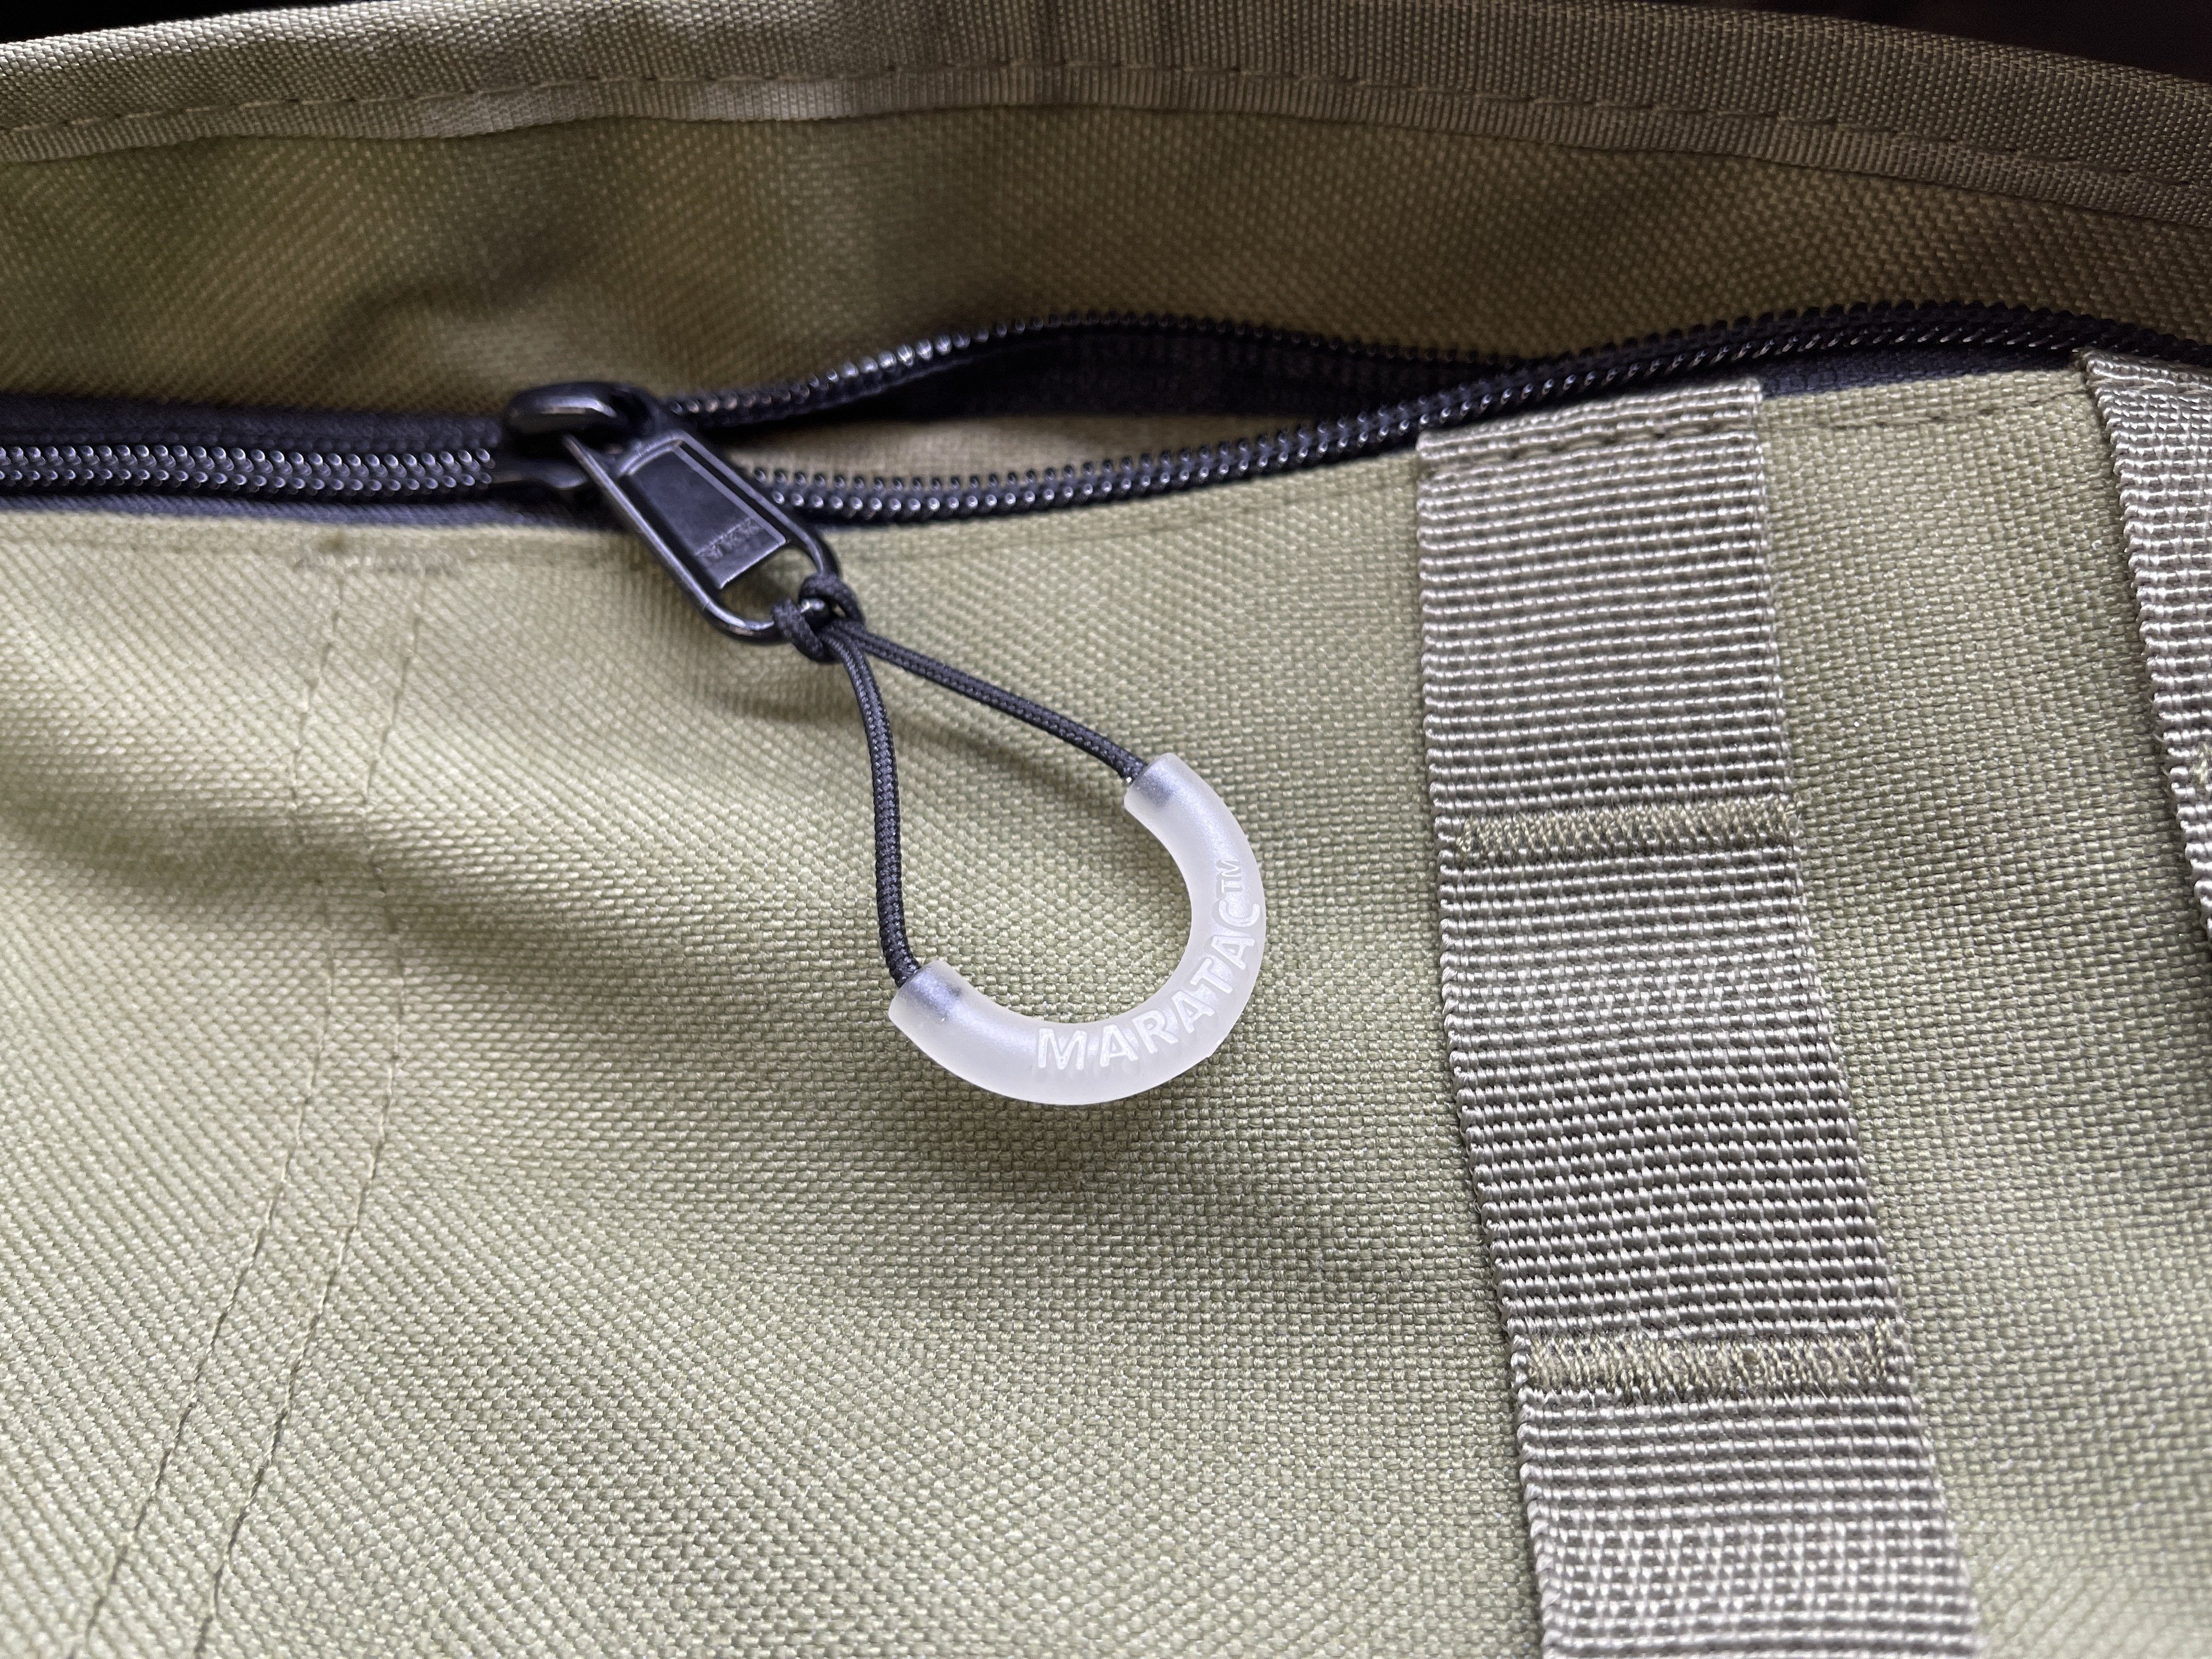 Zipper Pulls - 4 Pack - VetoProPac